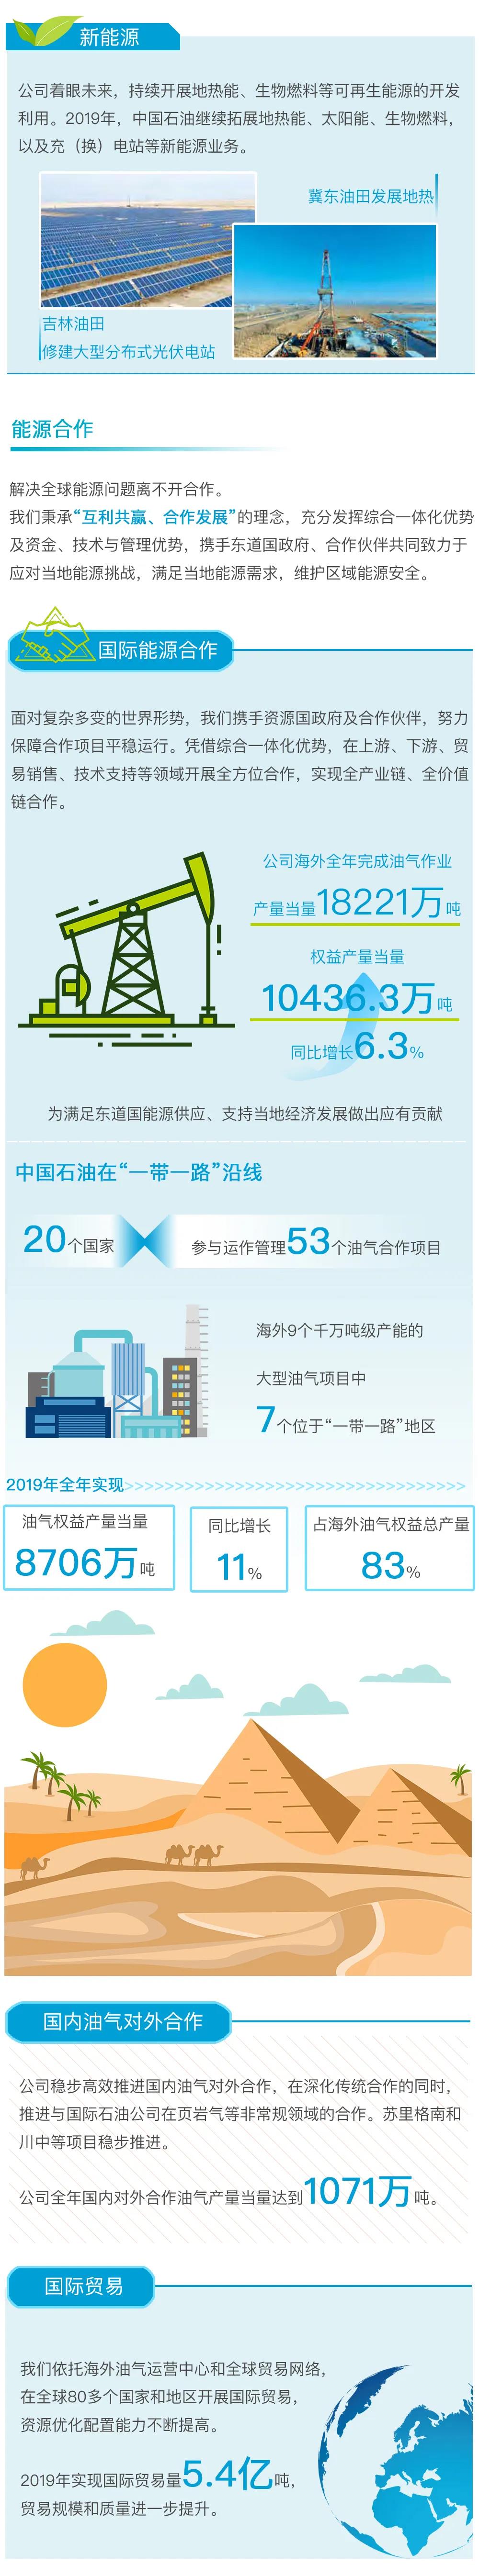 重磅 | 中国石油发布2019年度社会责任报告